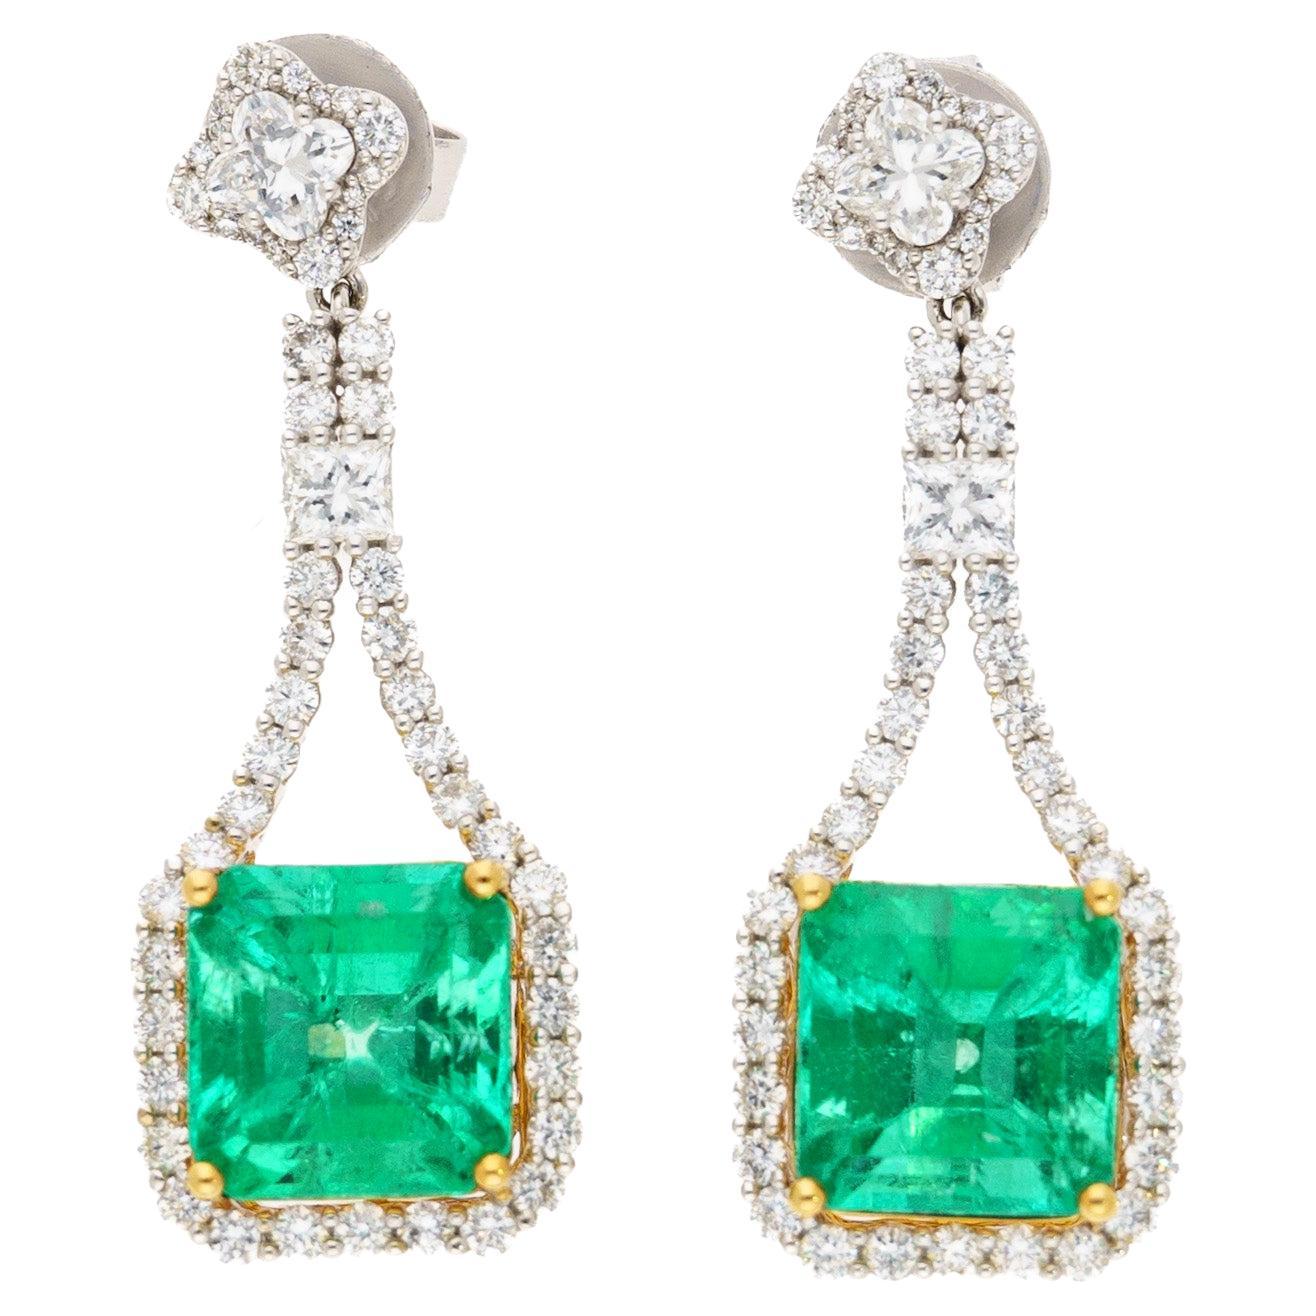 15 Carat Colombian Minor Oil Emerald & Diamond Dangle Earrings in 18K White Gold For Sale